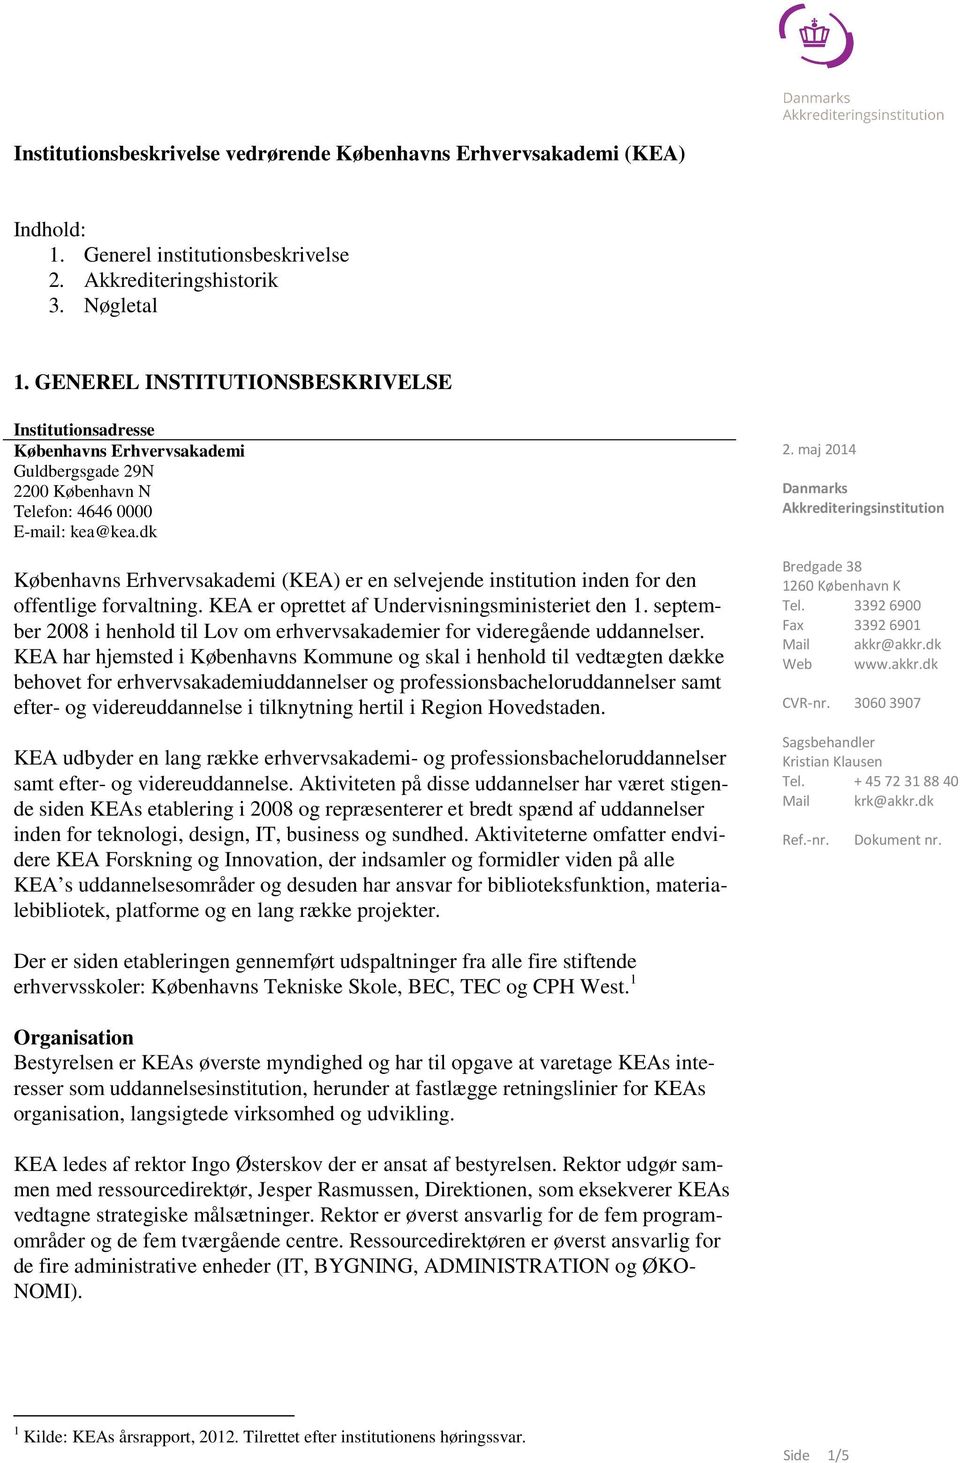 dk Københavns Erhvervsakademi (K) er en selvejende institution inden for den offentlige forvaltning. K er oprettet af Undervisningsministeriet den 1.